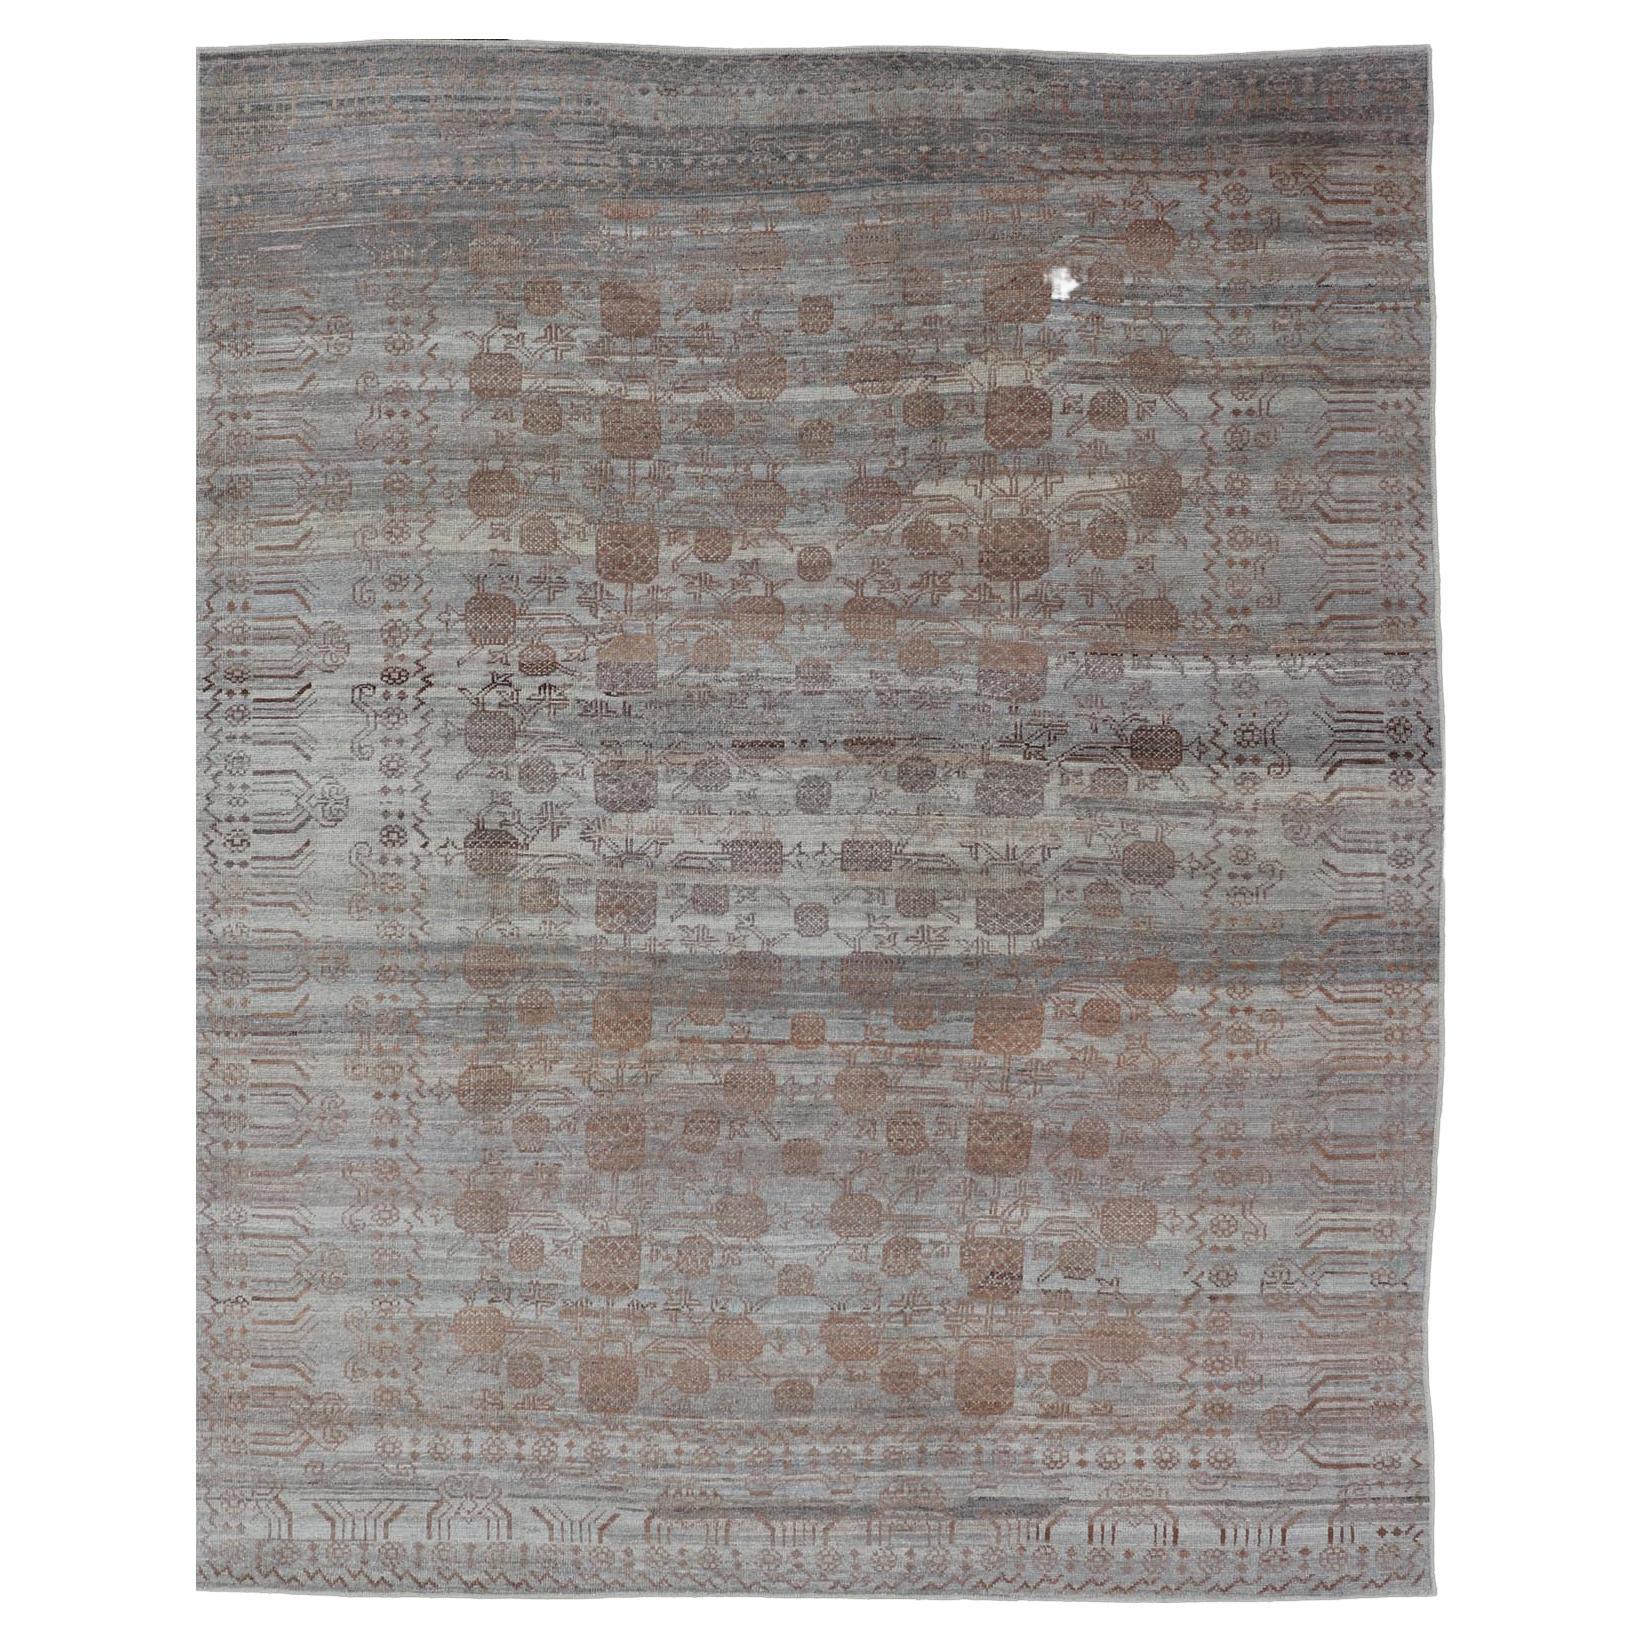 Moderner handgeknüpfter Khotan-Teppich mit subgeometrischem Granatapfeldesign, Moderne